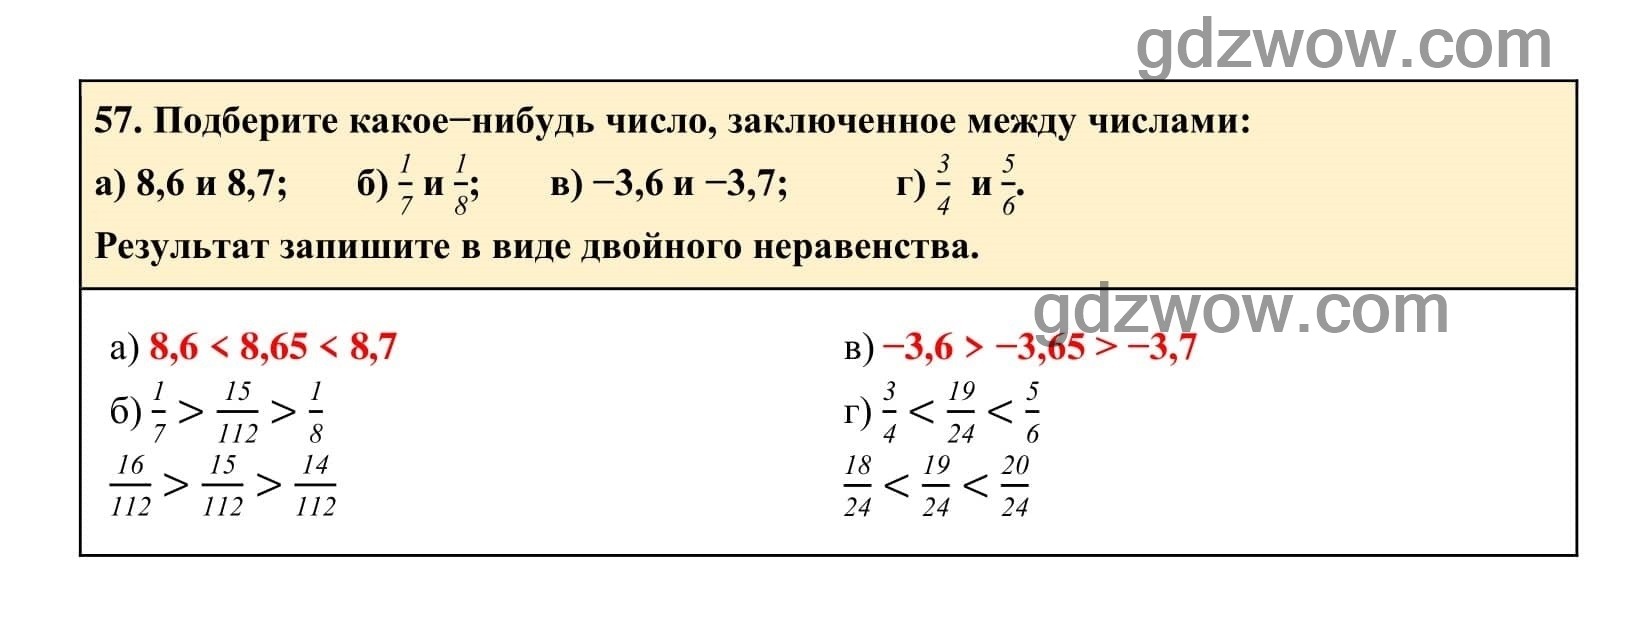 Упражнение 57 - ГДЗ по Алгебре 7 класс Учебник Макарычев (решебник) - GDZwow